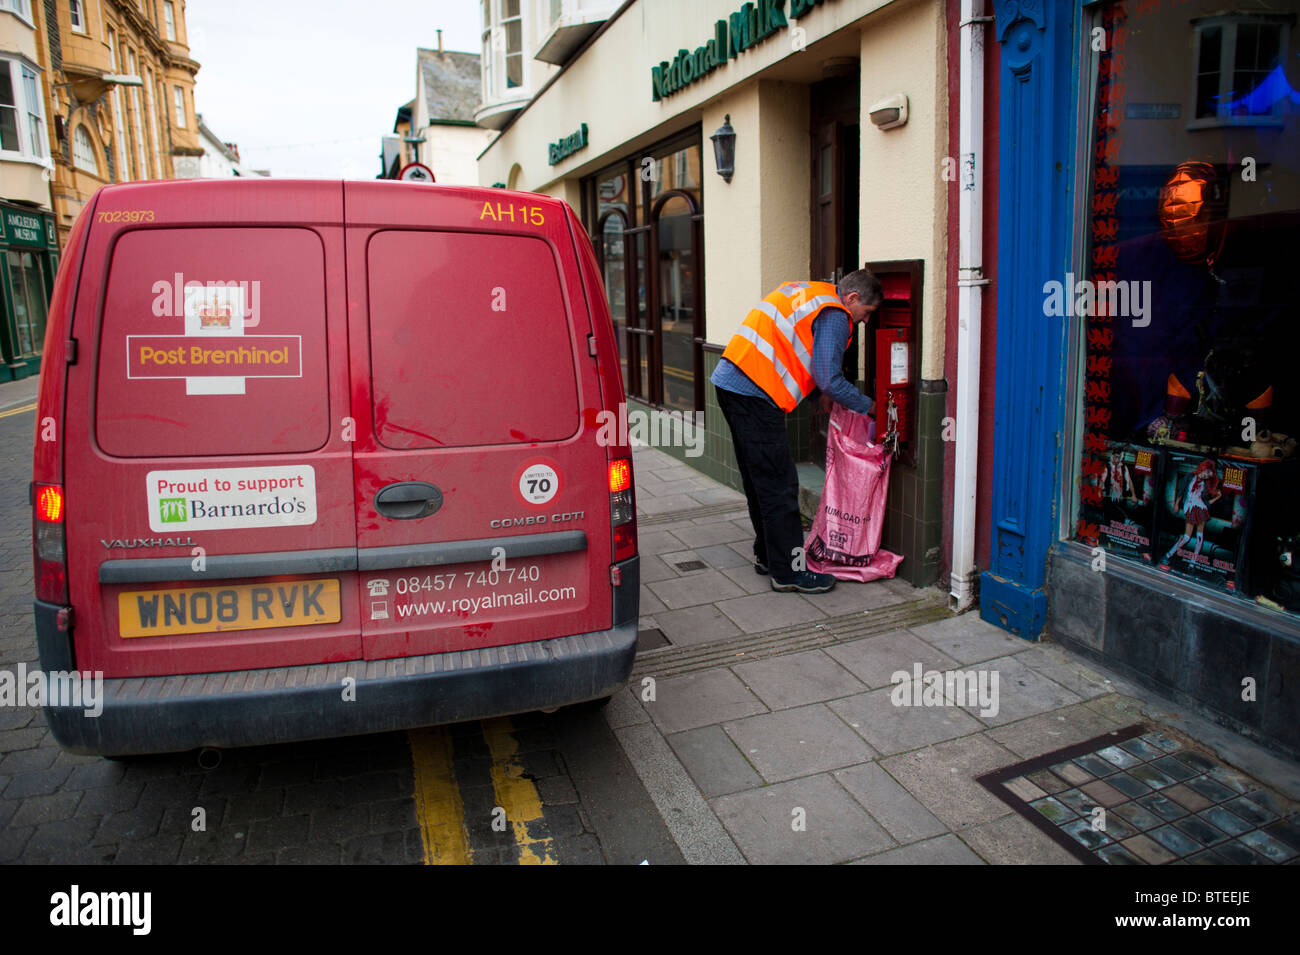 Royal Mail postman la collecte post, Aberystwyth, Pays de Galles UK Banque D'Images